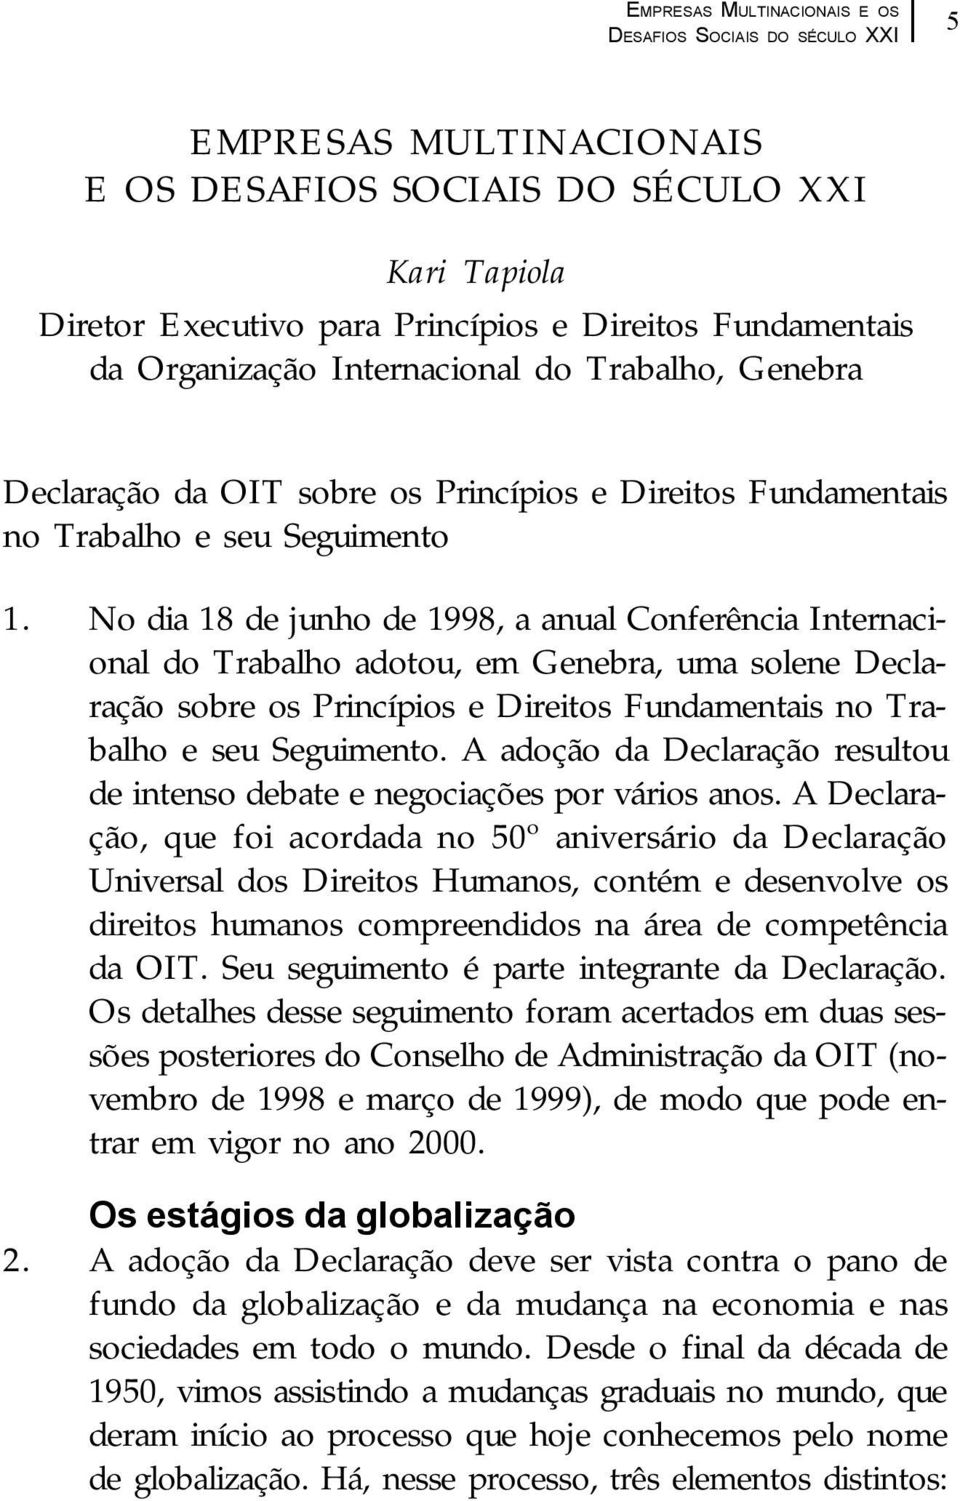 No dia 18 de junho de 1998, a anual Conferência Internacional do Trabalho adotou, em Genebra, uma solene Declaração sobre os Princípios e Direitos Fundamentais no Trabalho e seu Seguimento.